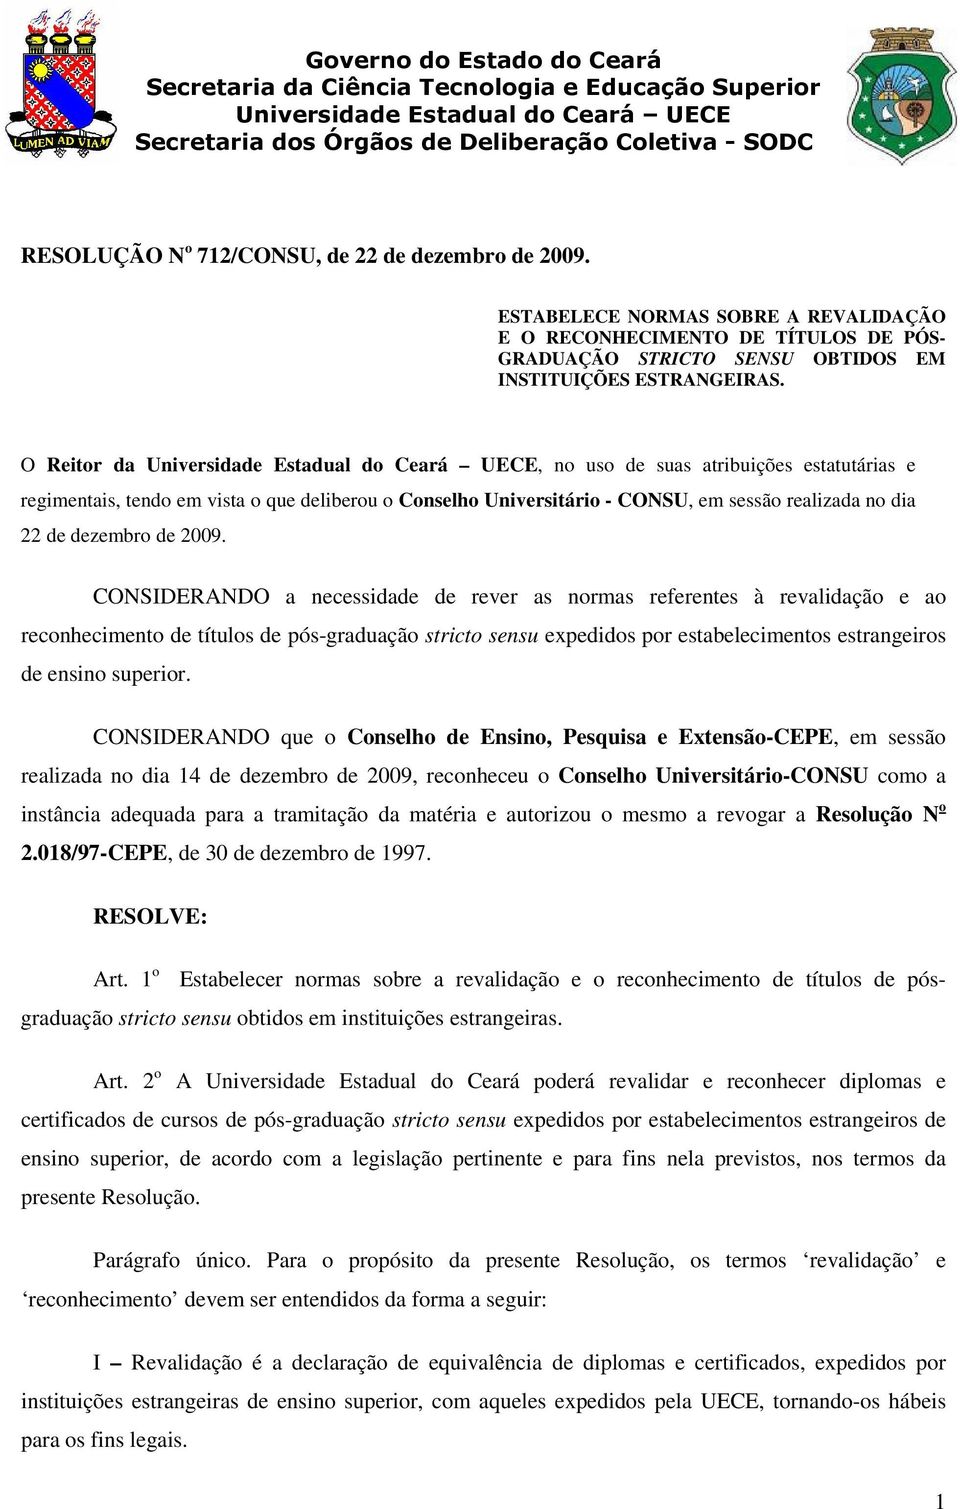 O Reitor da Universidade Estadual do Ceará UECE, no uso de suas atribuições estatutárias e regimentais, tendo em vista o que deliberou o Conselho Universitário - CONSU, em sessão realizada no dia 22